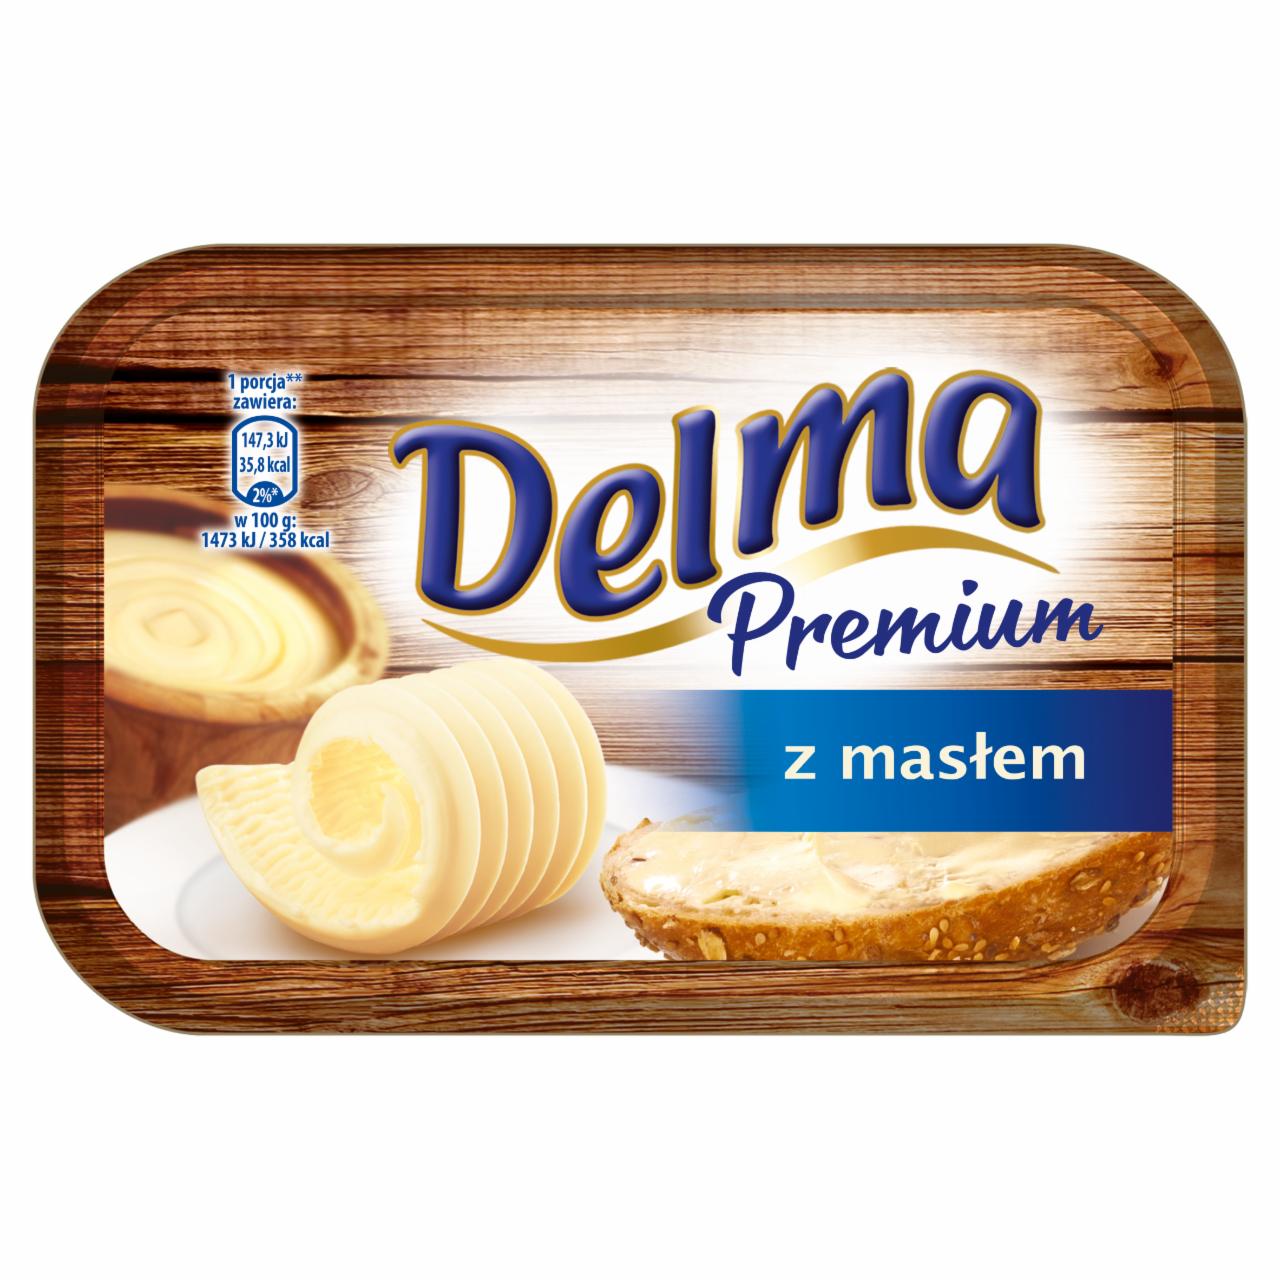 Zdjęcia - Delma Premium Miks tłuszczowy z masłem 450 g